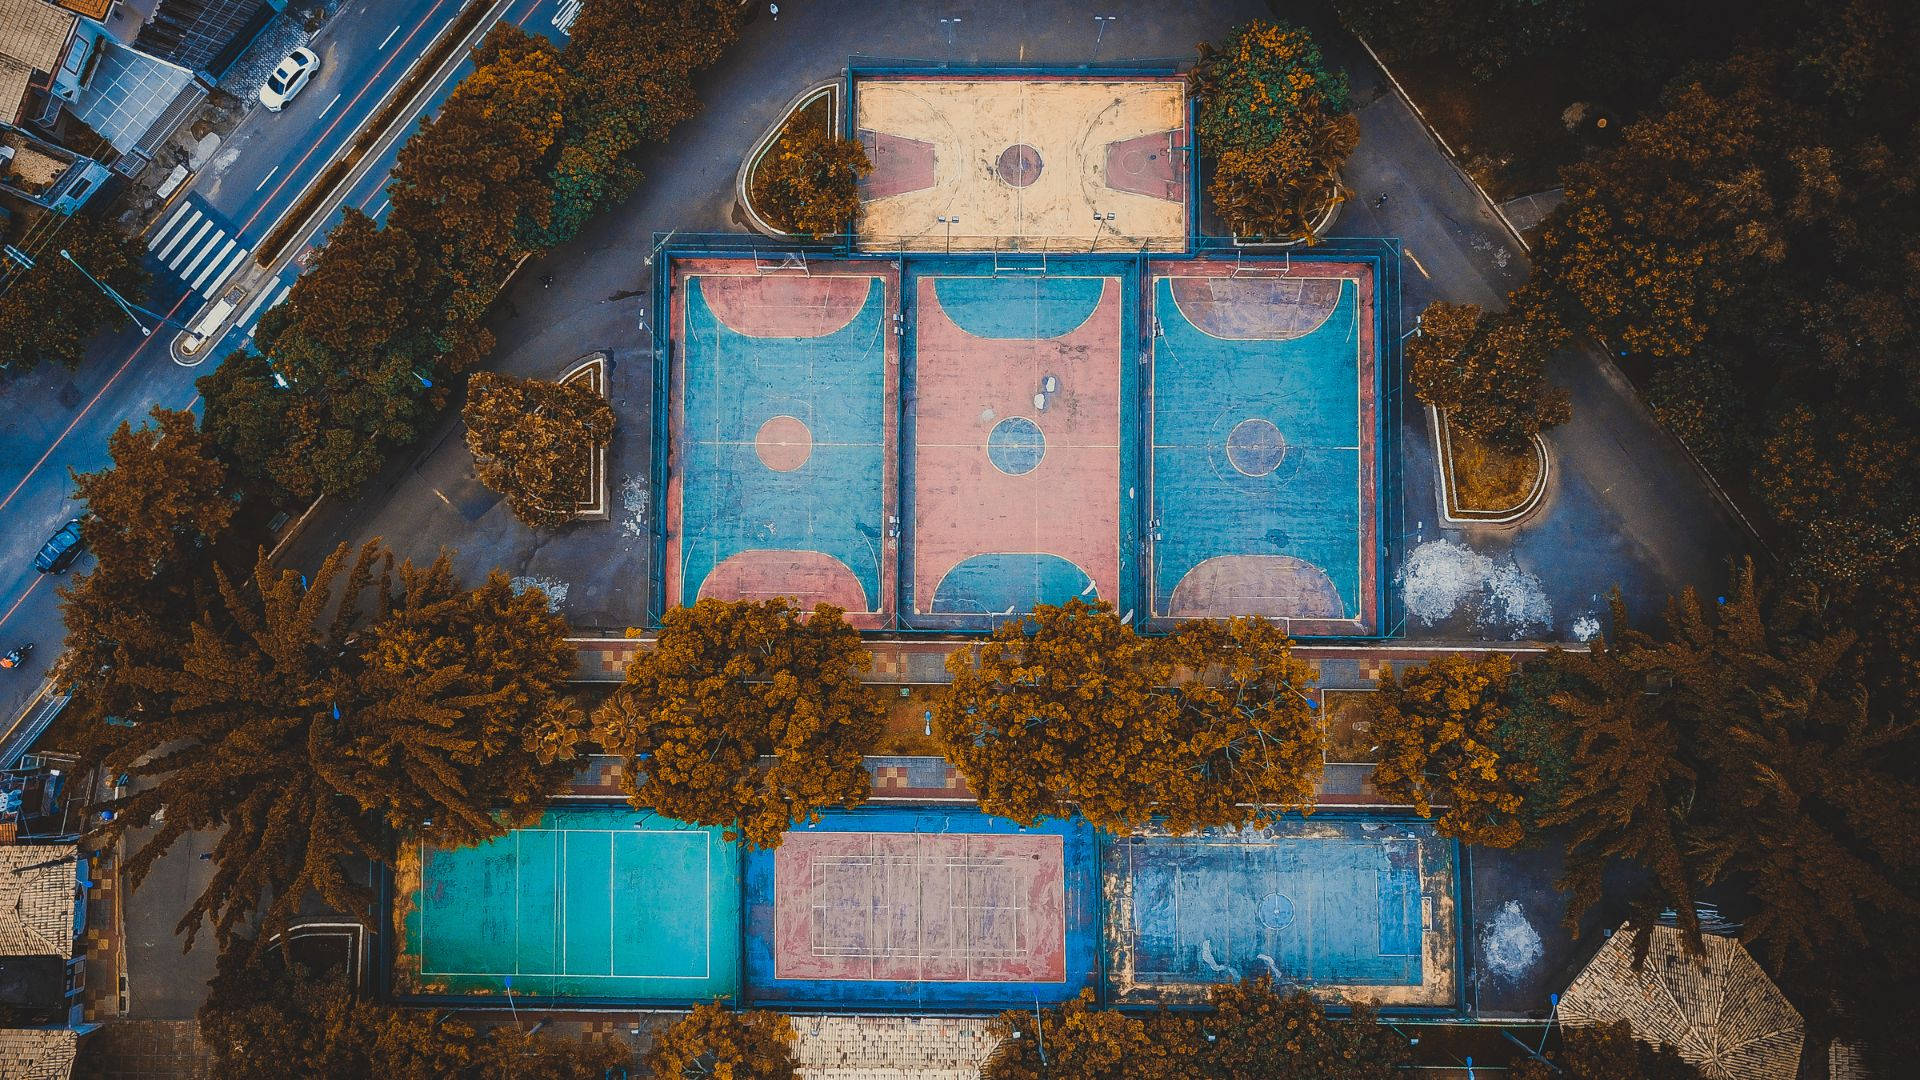 Brazil Outdoor Basketball Court Complex Wallpaper